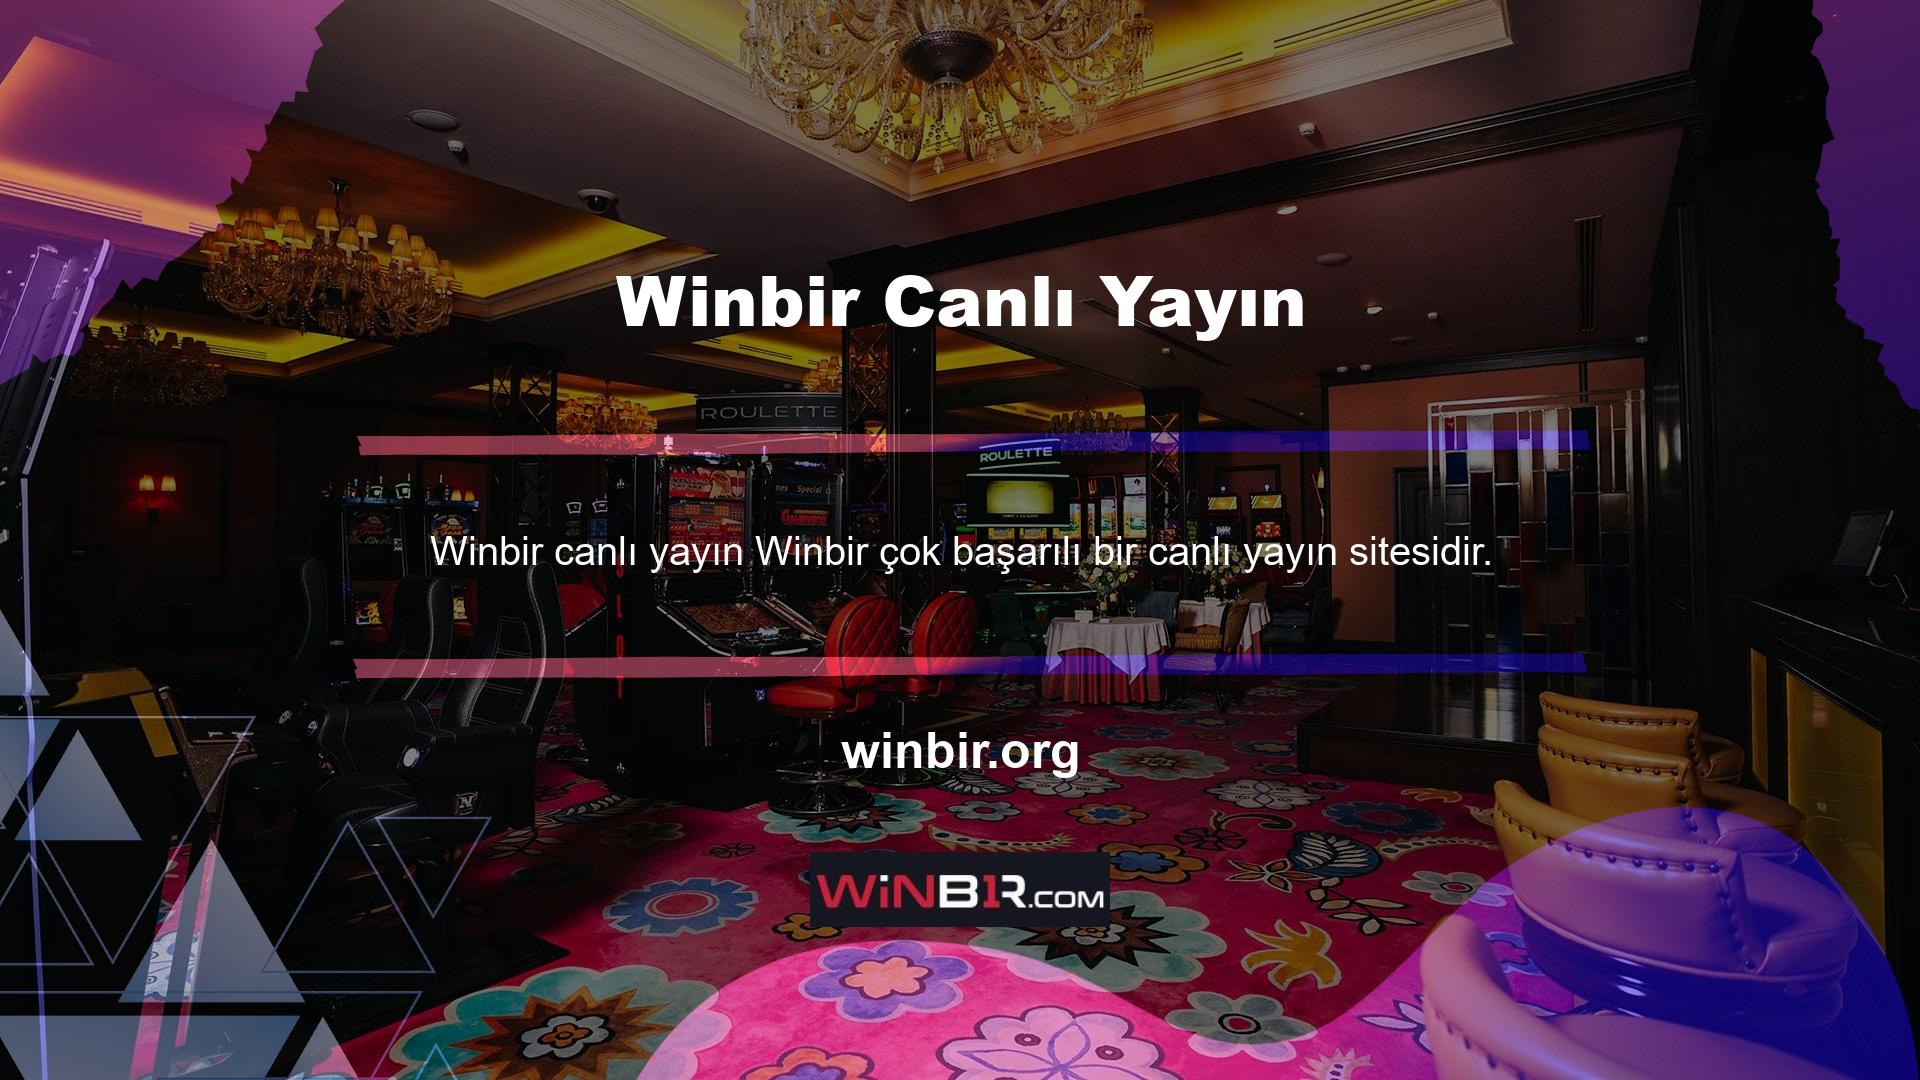 Winbir, canlı yayın işlevini bahis pazarına tanıtan ilk sitelerden biriydi